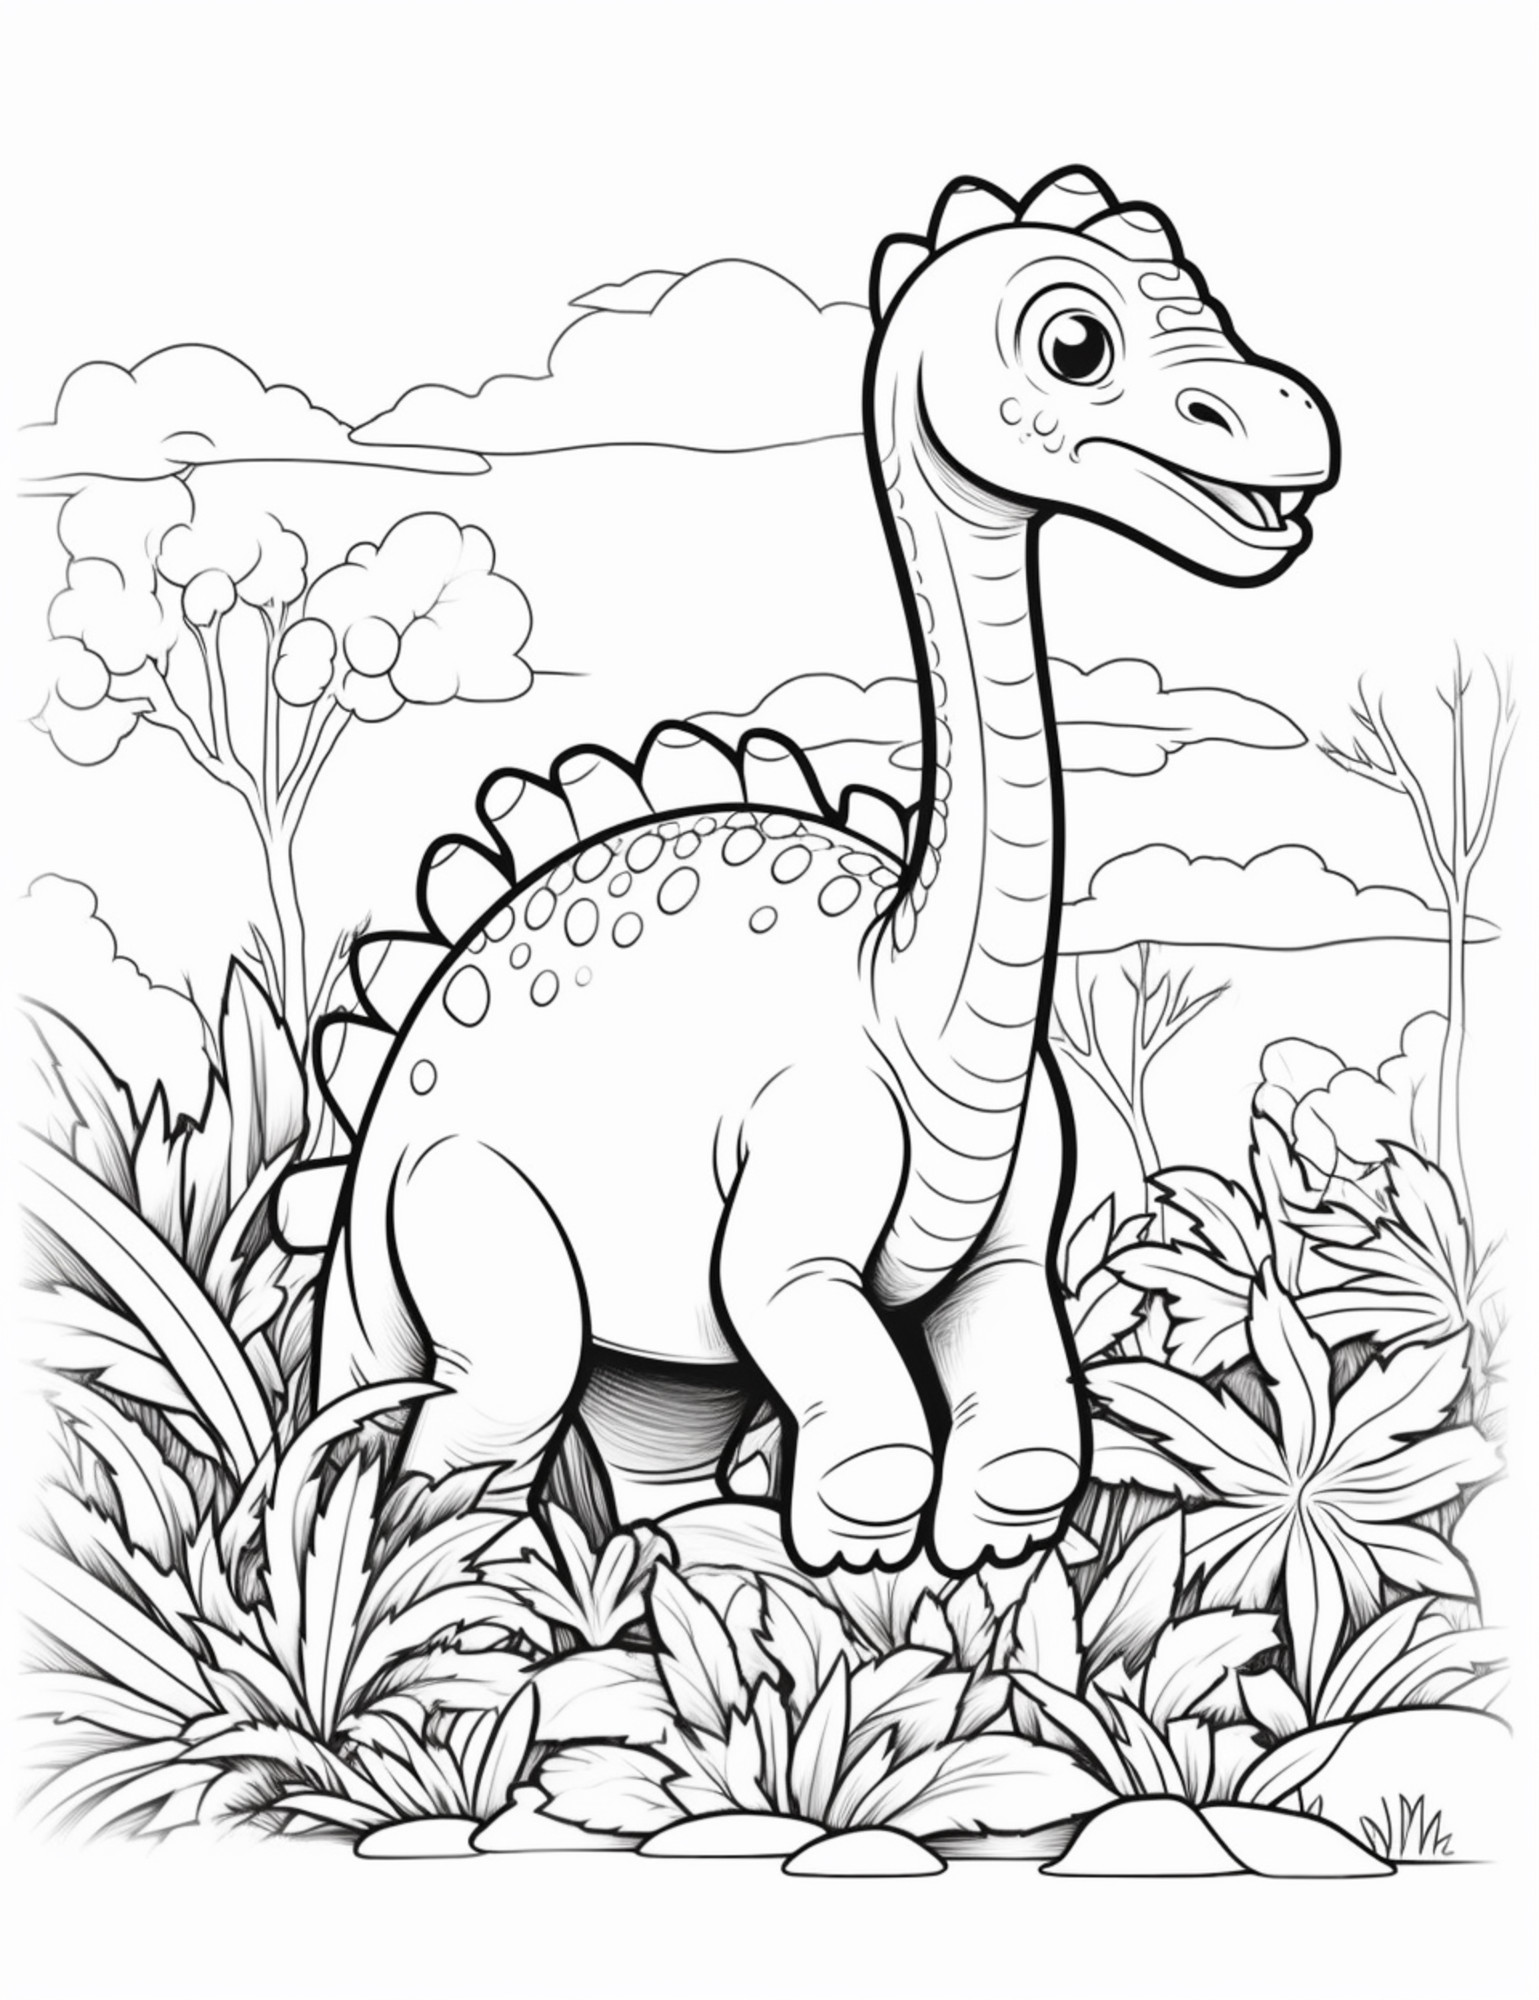 Раскраска для детей: динозавр с длинной шеей в джунглях